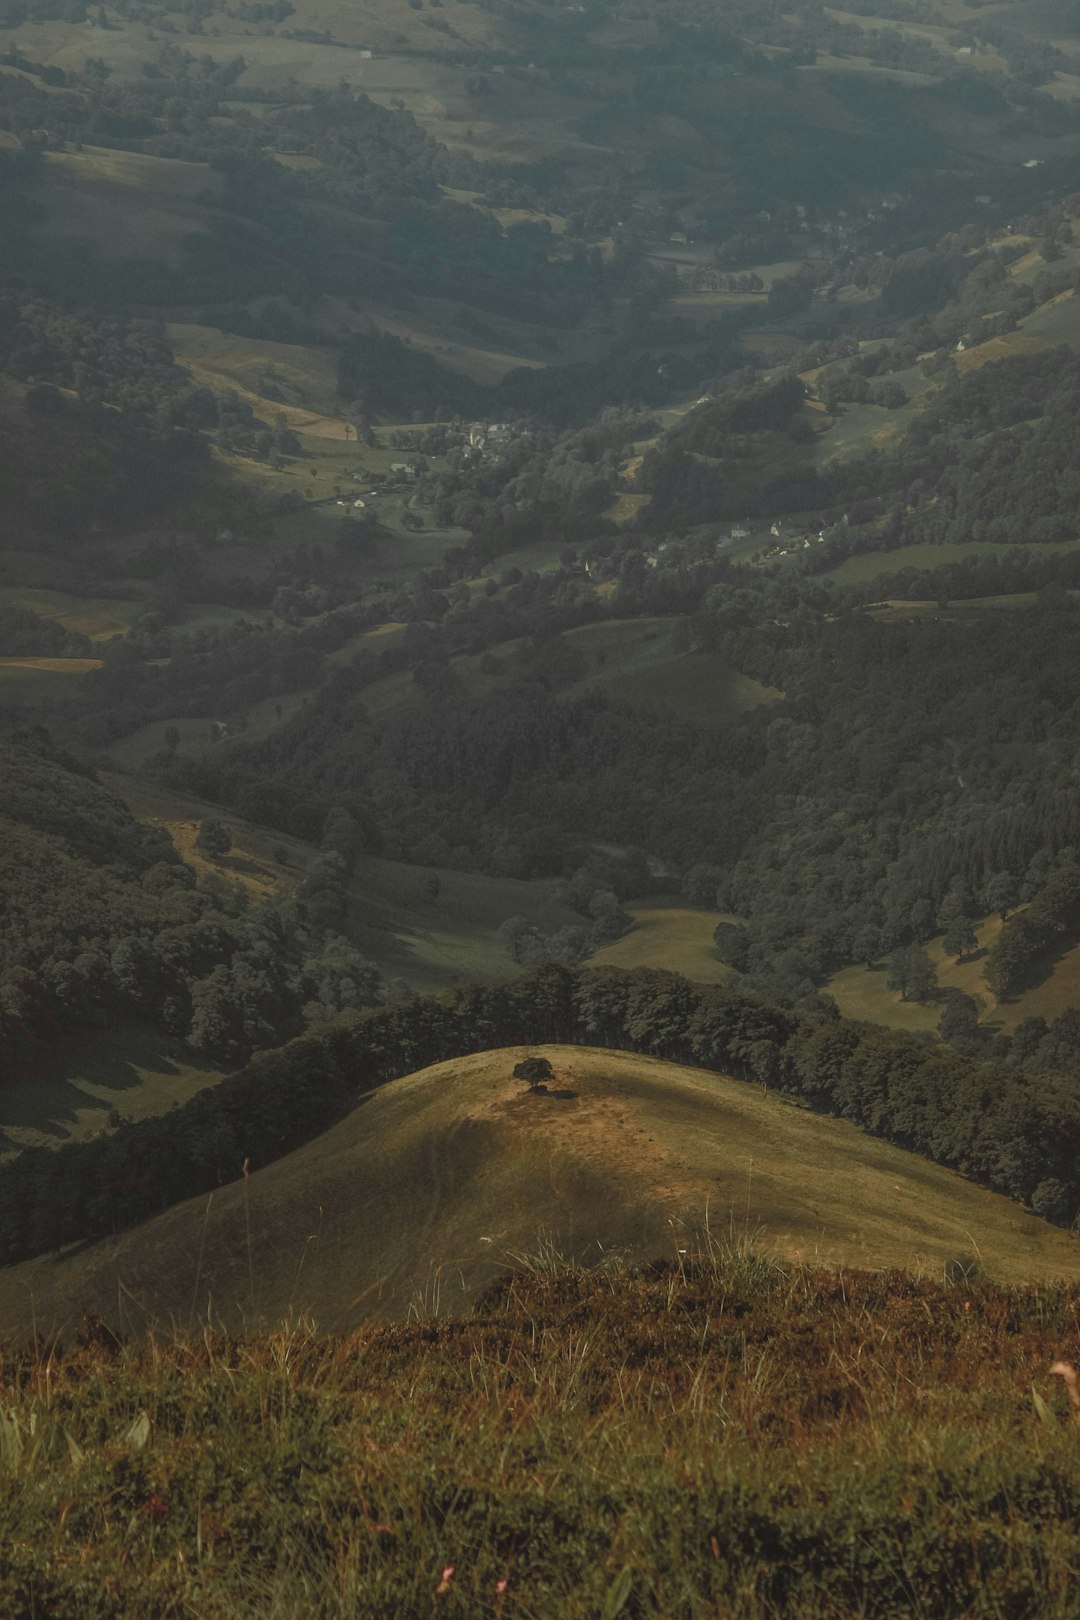 Hill photo spot Parc naturel régional des Volcans d'Auvergne Puy-de-Dôme